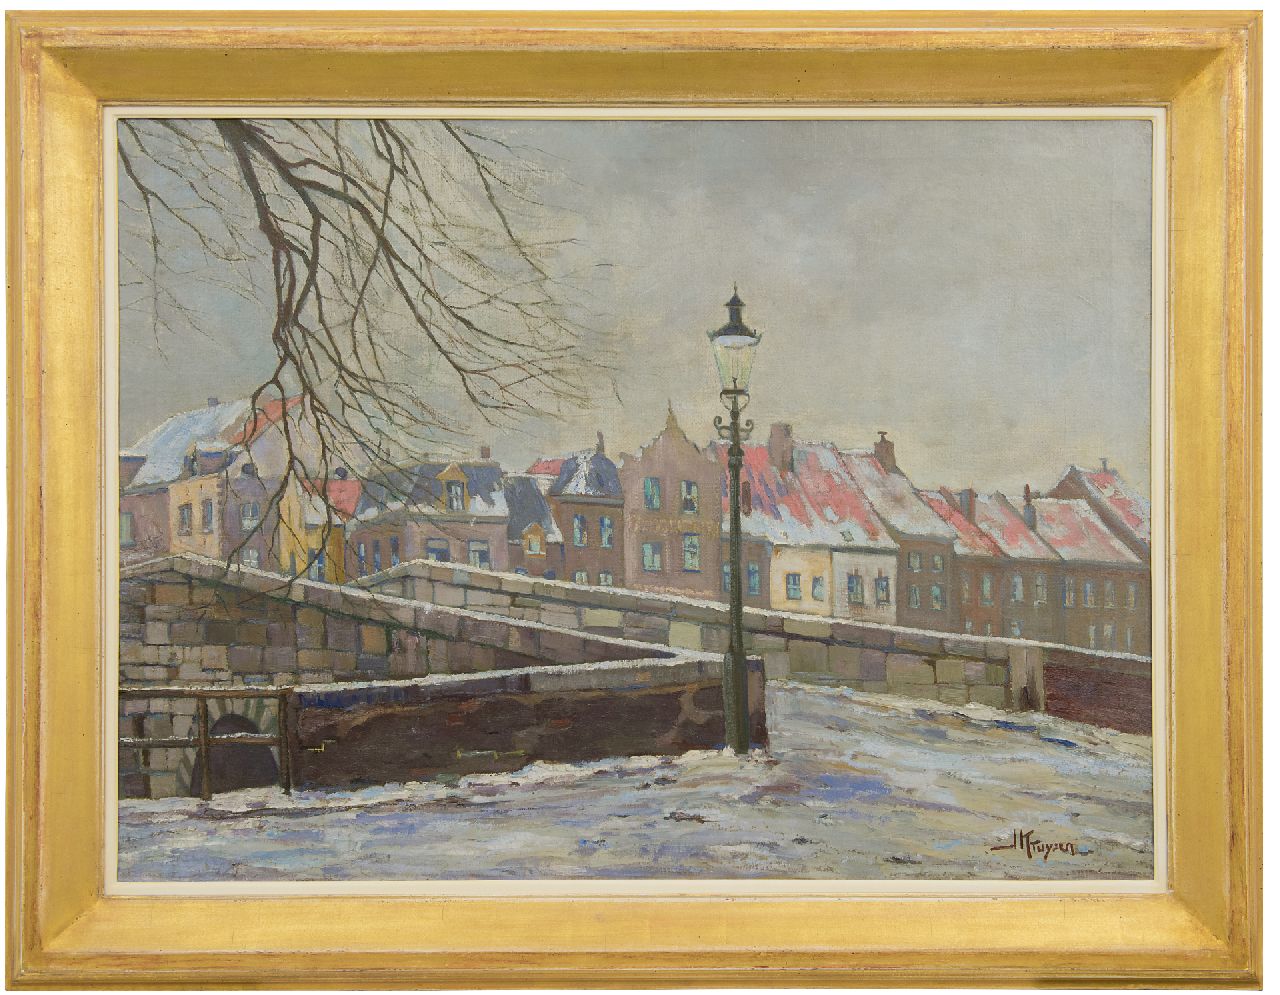 Kruysen J.  | Johannes 'Jan' Kruysen | Schilderijen te koop aangeboden | De Stenen Brug van Roermond in de winter, olieverf op doek 74,1 x 100,5 cm, gesigneerd rechtsonder